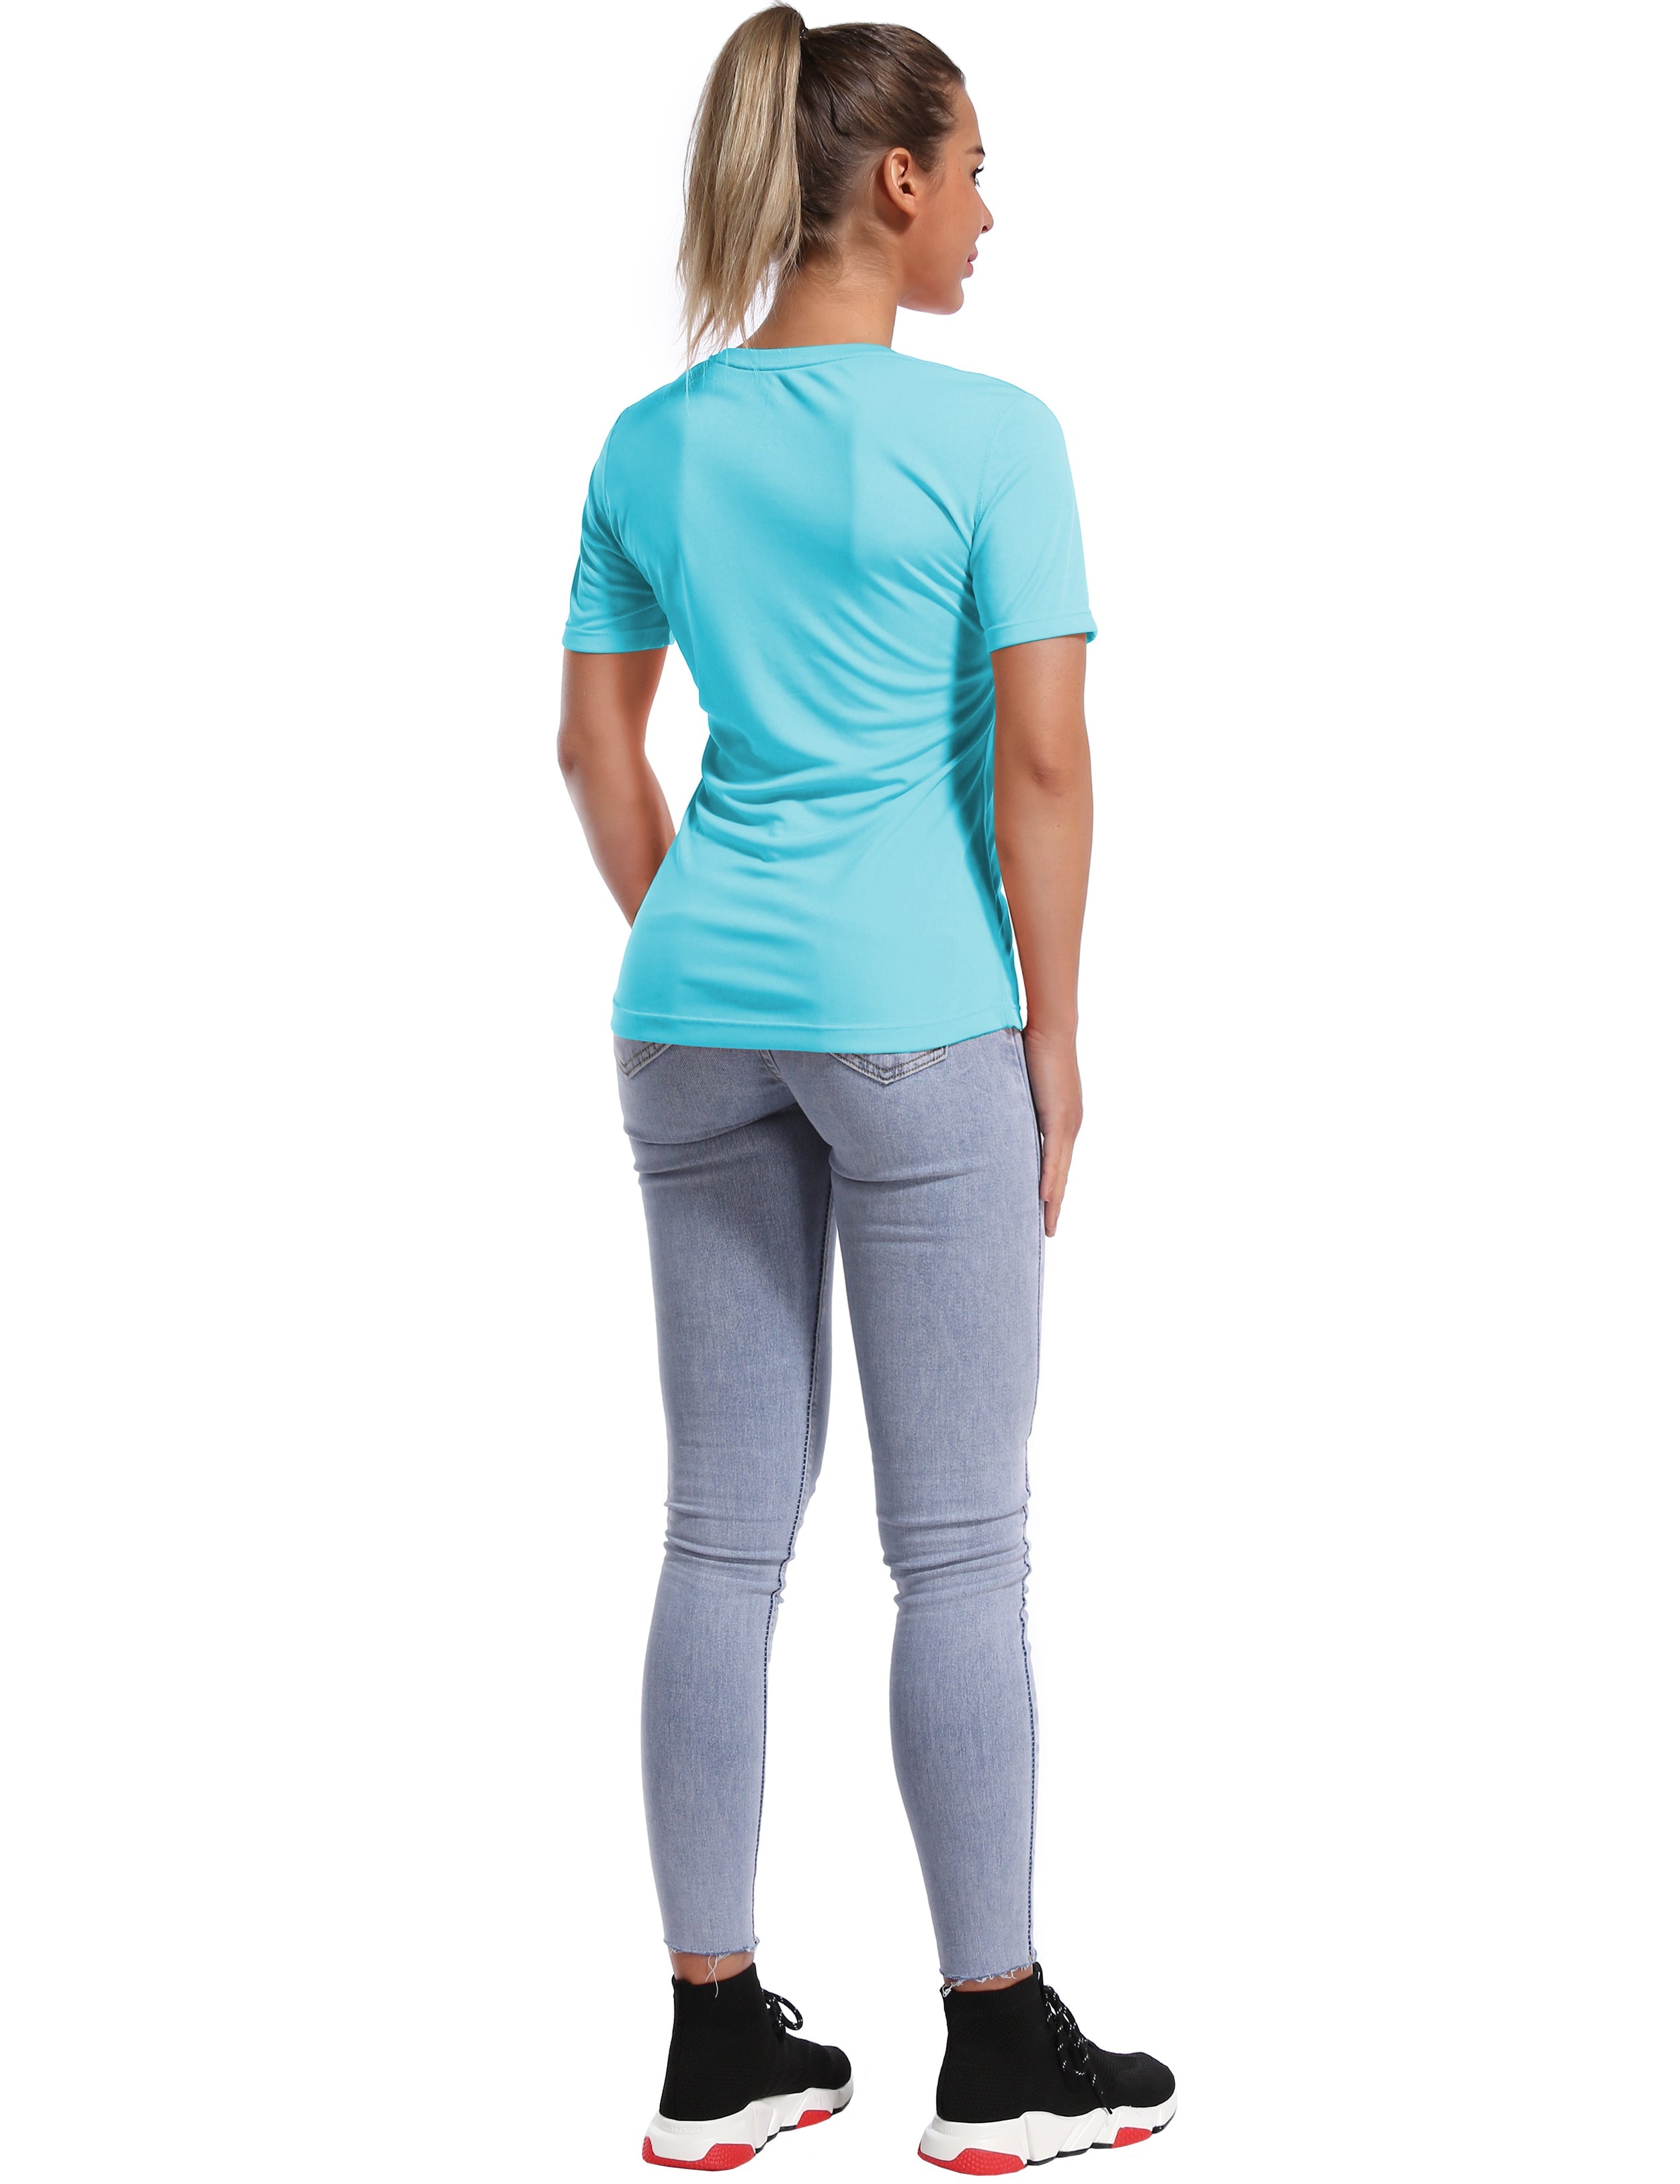 Short Sleeve Athletic Shirts blue_Pilates